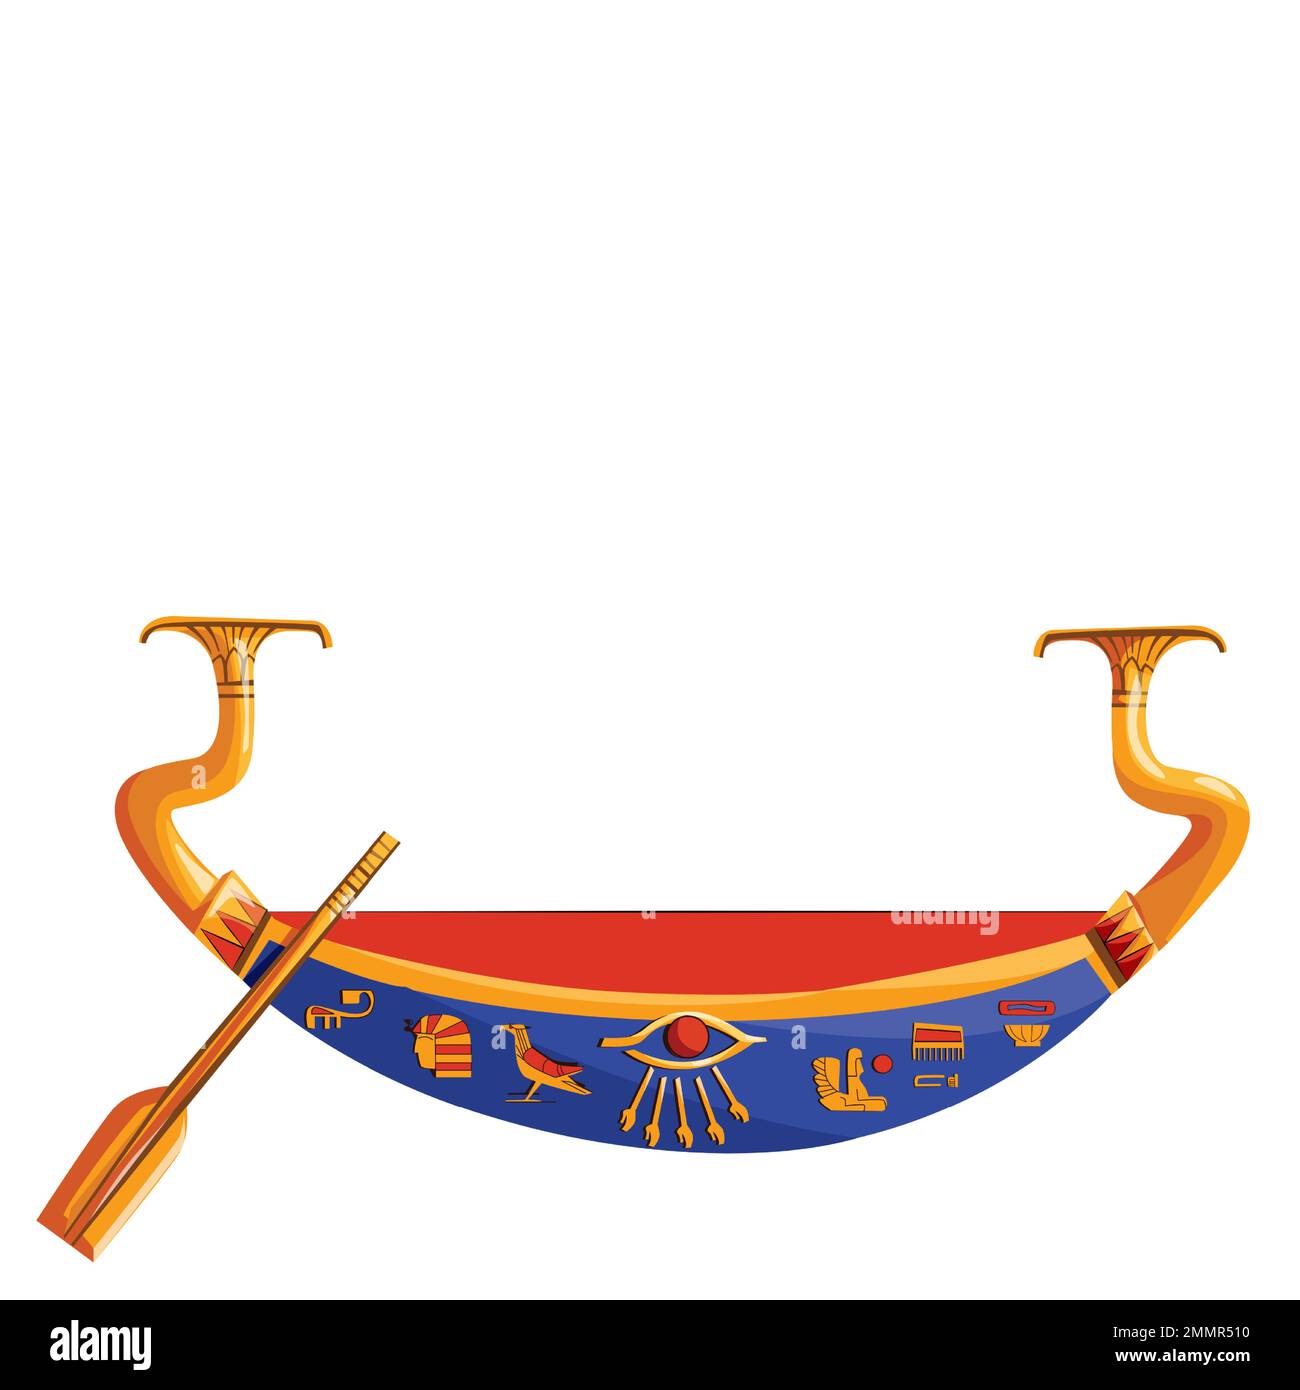 Antico Egitto barca di legno con pagaia per sole dio viaggio cartone animato illustrazione vettore. Simbolo religioso della cultura egiziana, barque decorato con rospo per il Dio antico, metafora del cambiamento di giorno e di notte Illustrazione Vettoriale